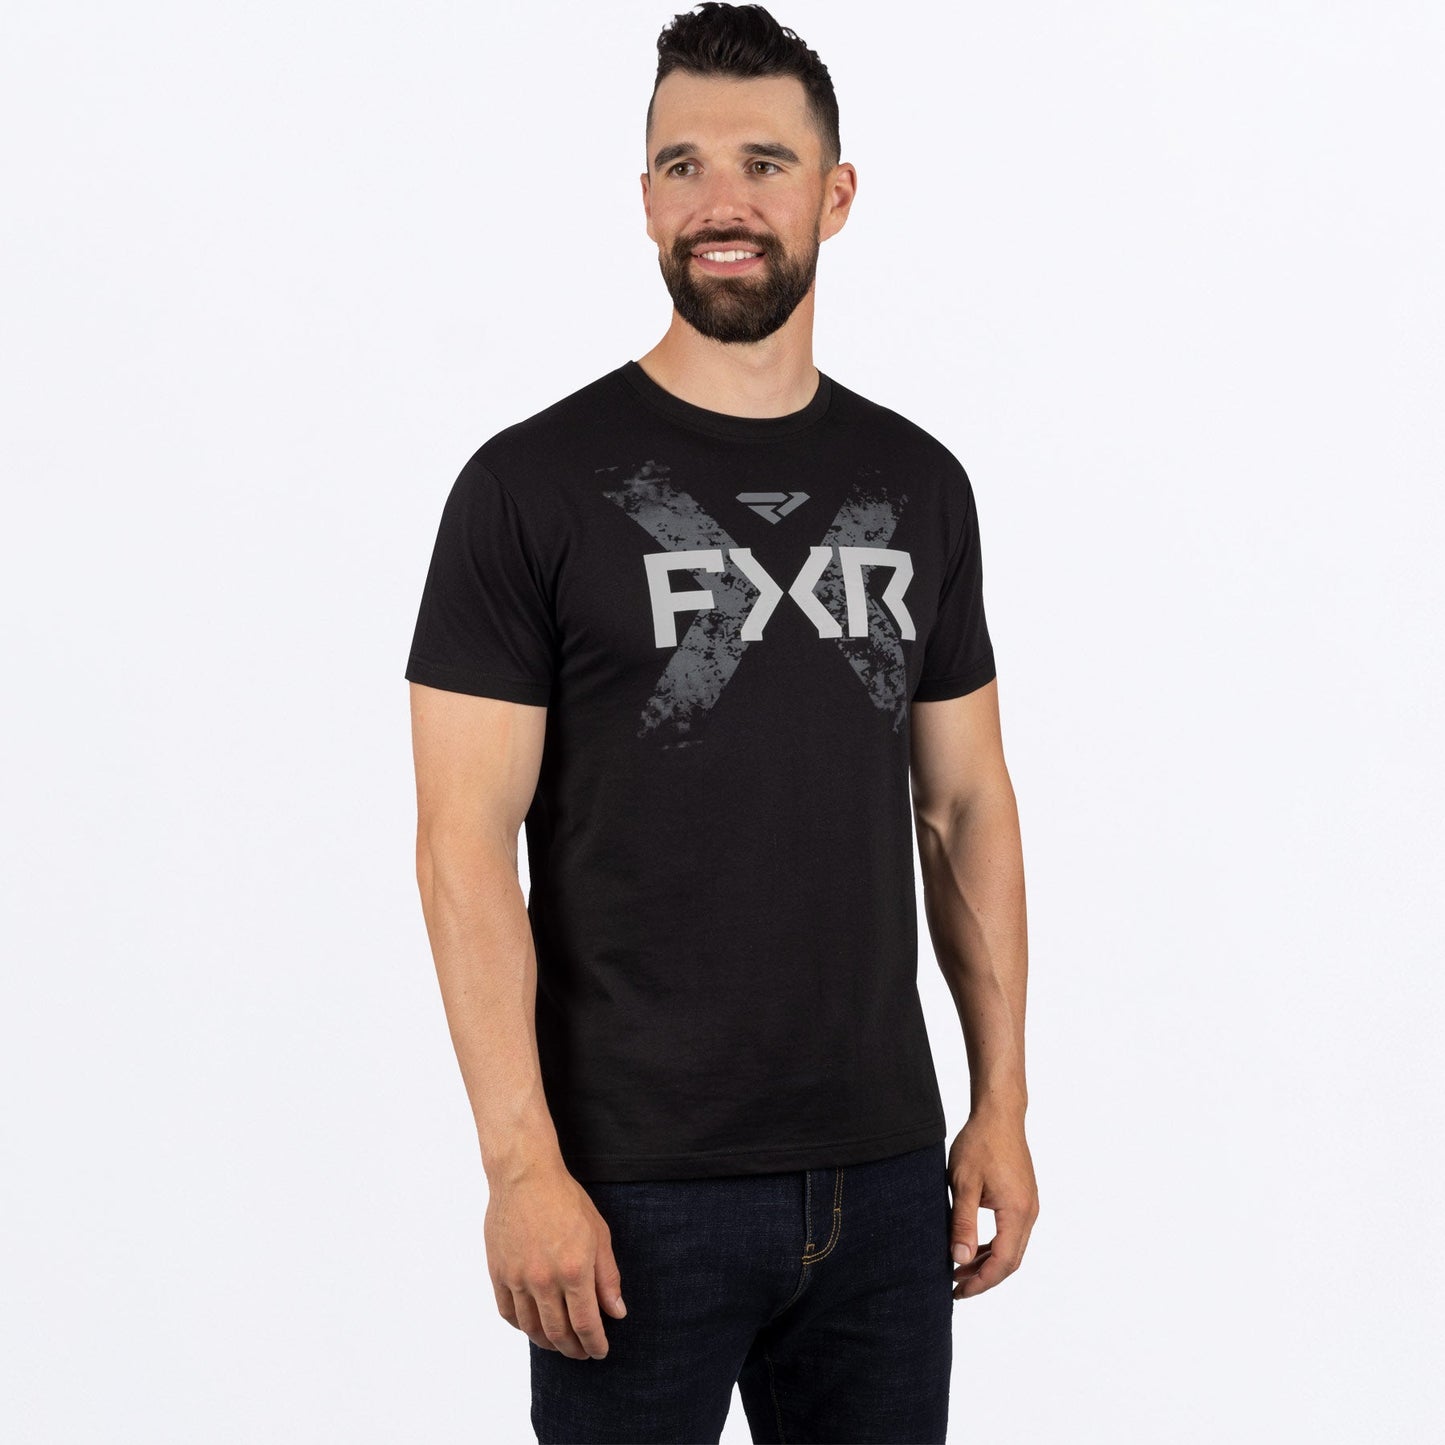 एफएक्सआर पुरुषों की विक्ट्री प्रीमियम टी-शर्ट